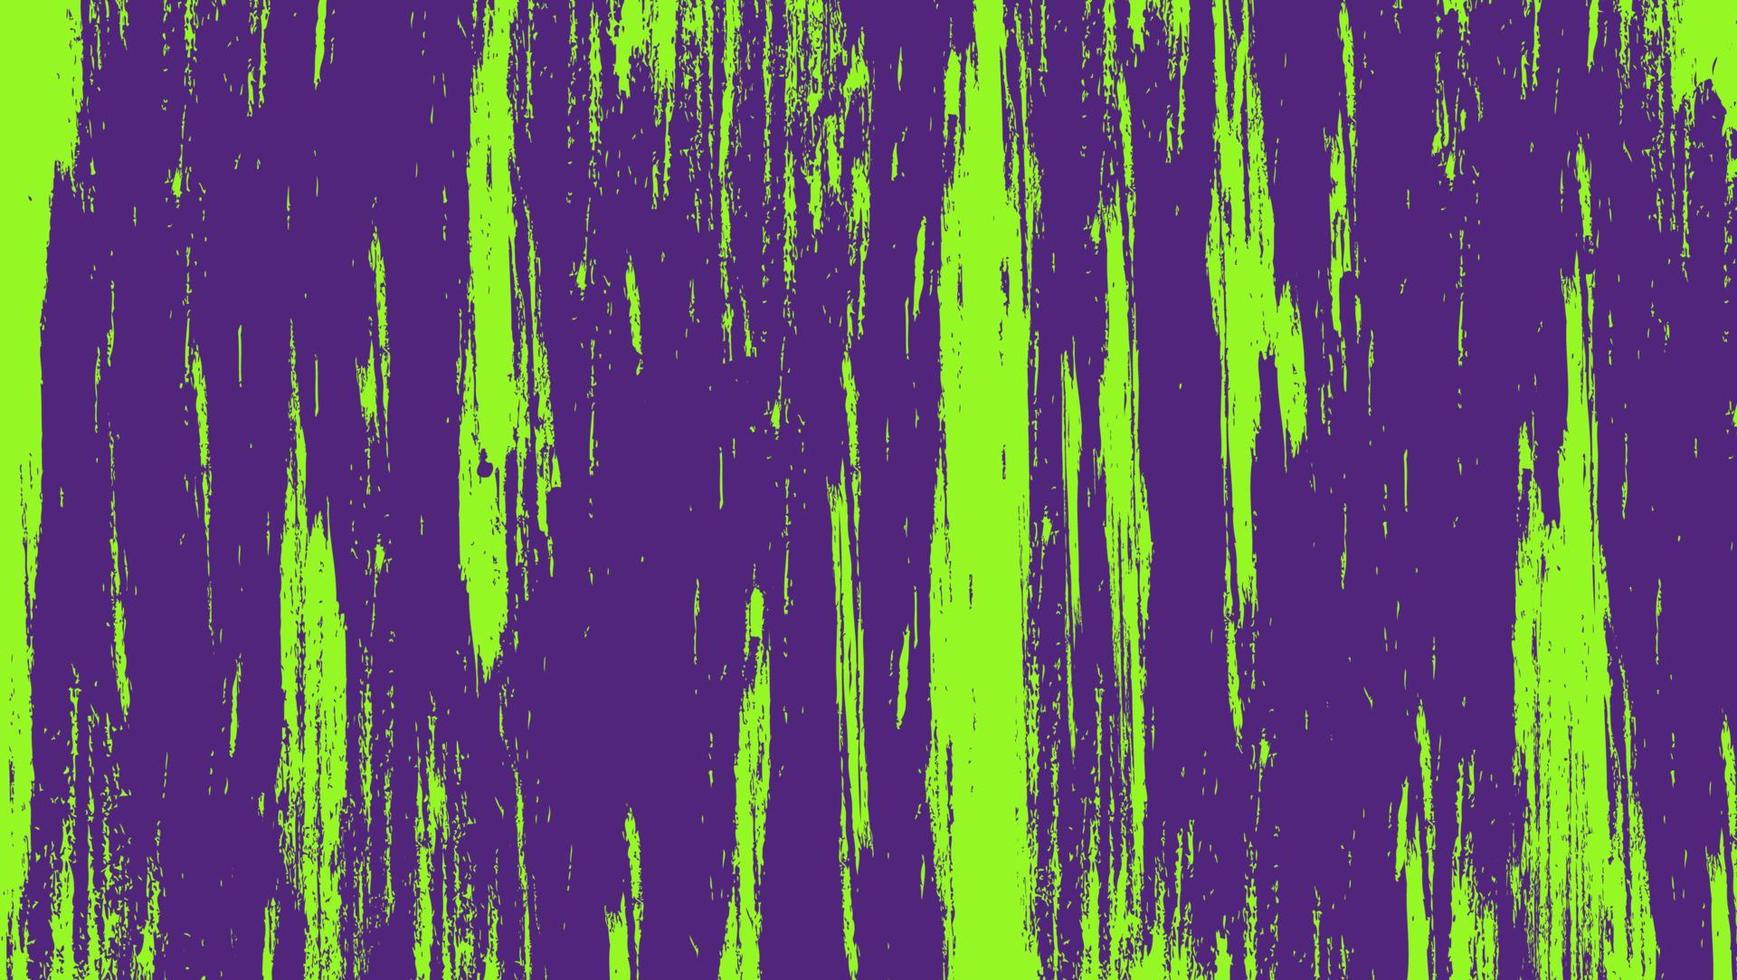 textura grunge verde brillante abstracta en fondo púrpura oscuro vector